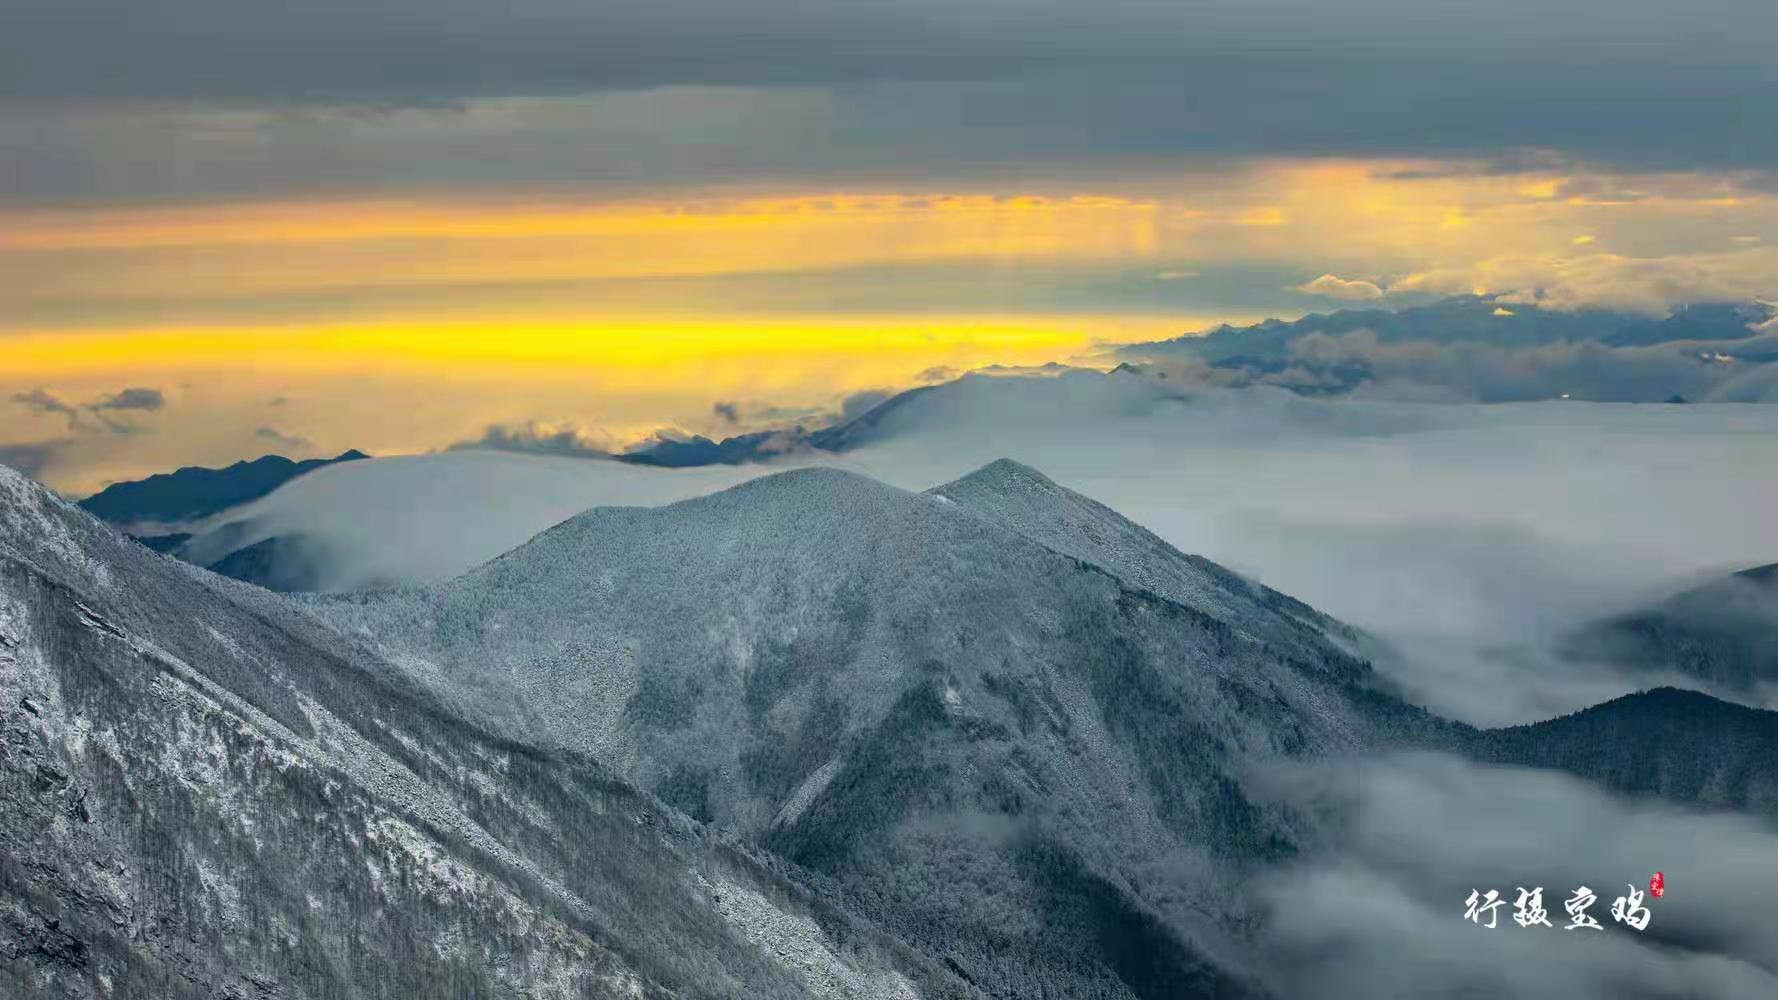 让世界感知秦岭之美 - 景区新闻 - 太白山旅游官网